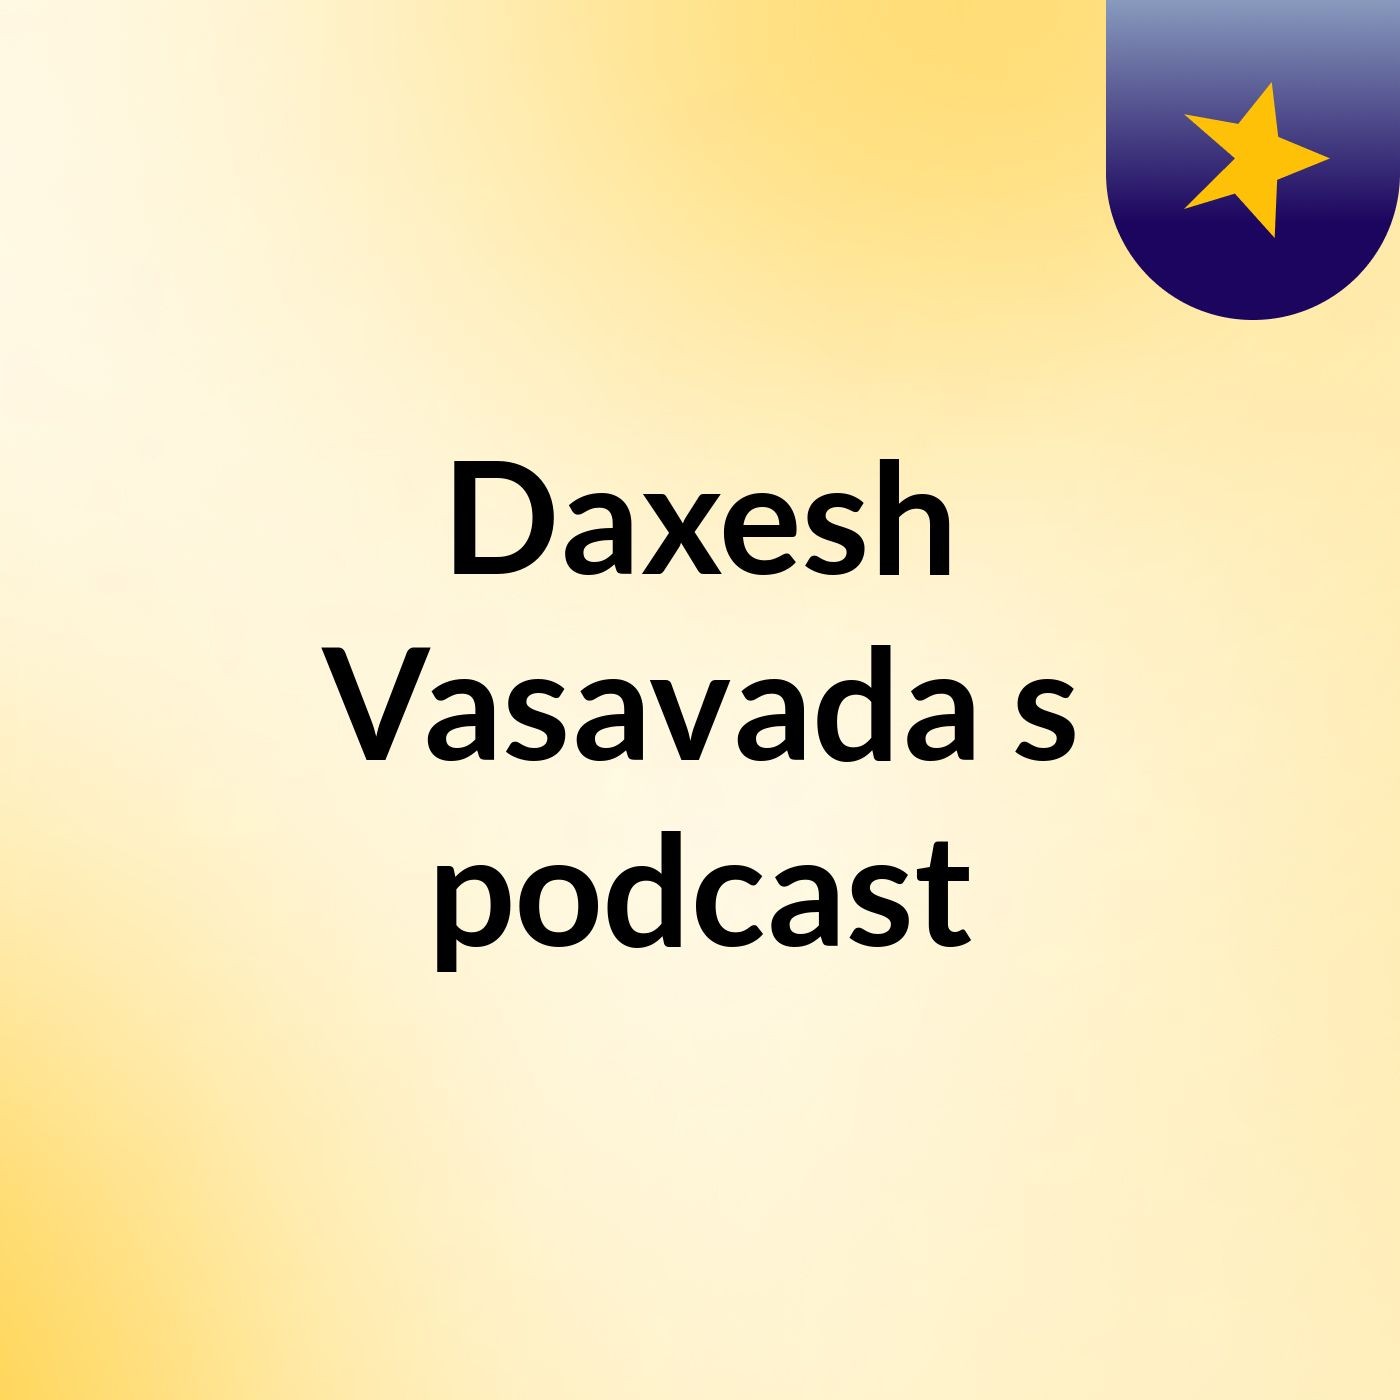 Episode 2 - Daxesh Vasavada's podcast